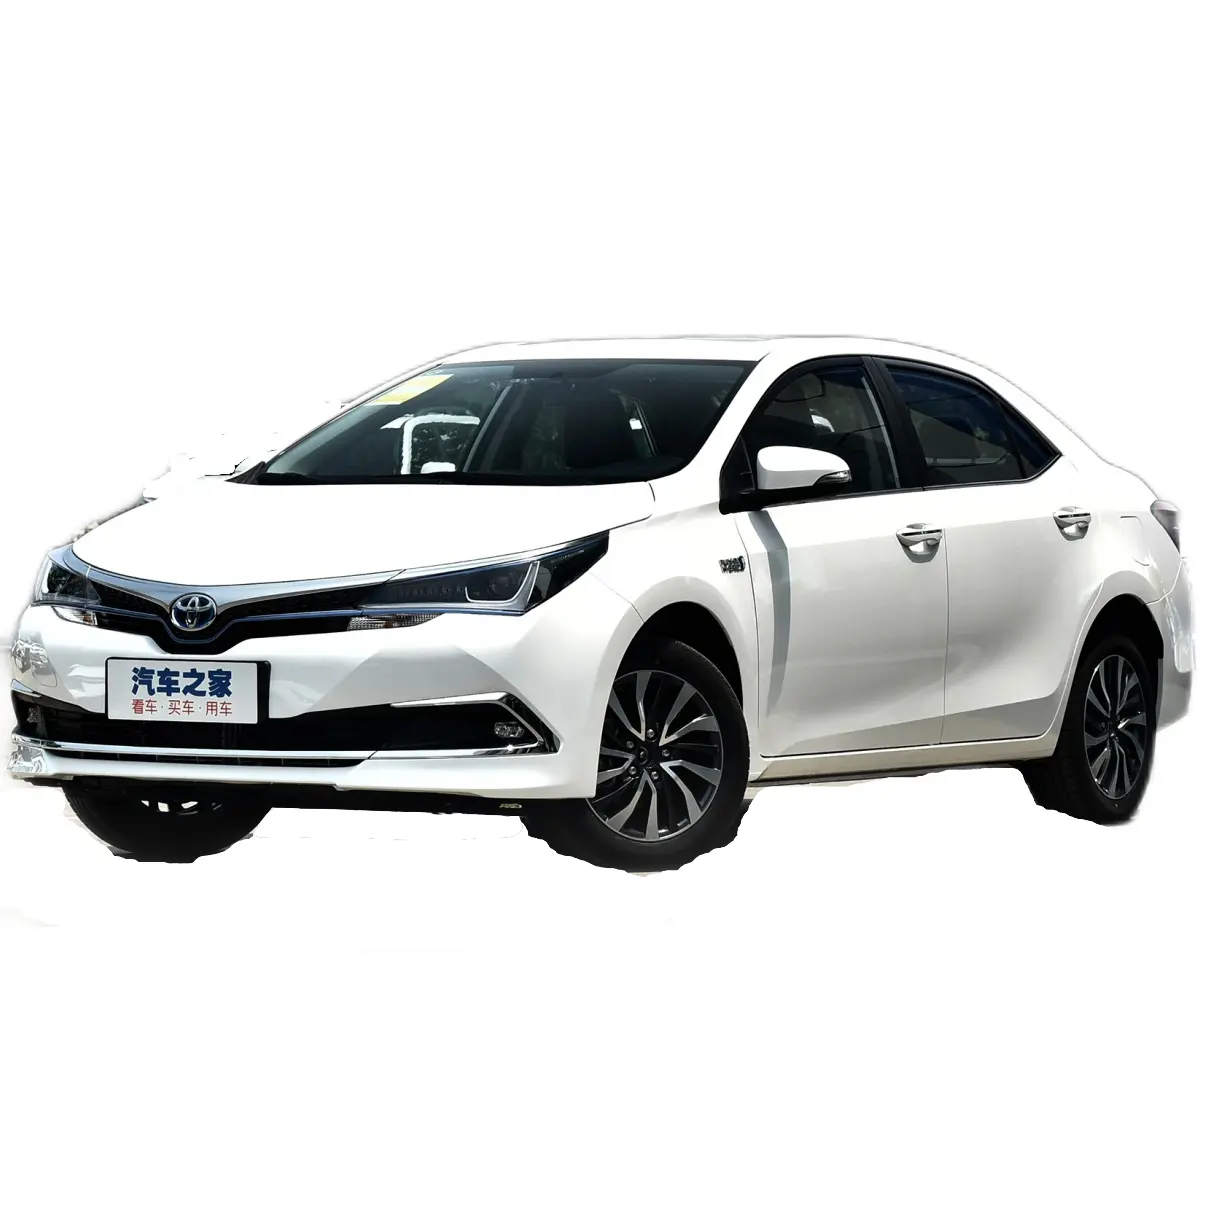 Toyota Corolla Voiture 4 Roues Multi-fonction Automatique Sunleatherseats LED Électrique Nouveau Sport SUV Byd F3 2015 Arizo 5 Cuir